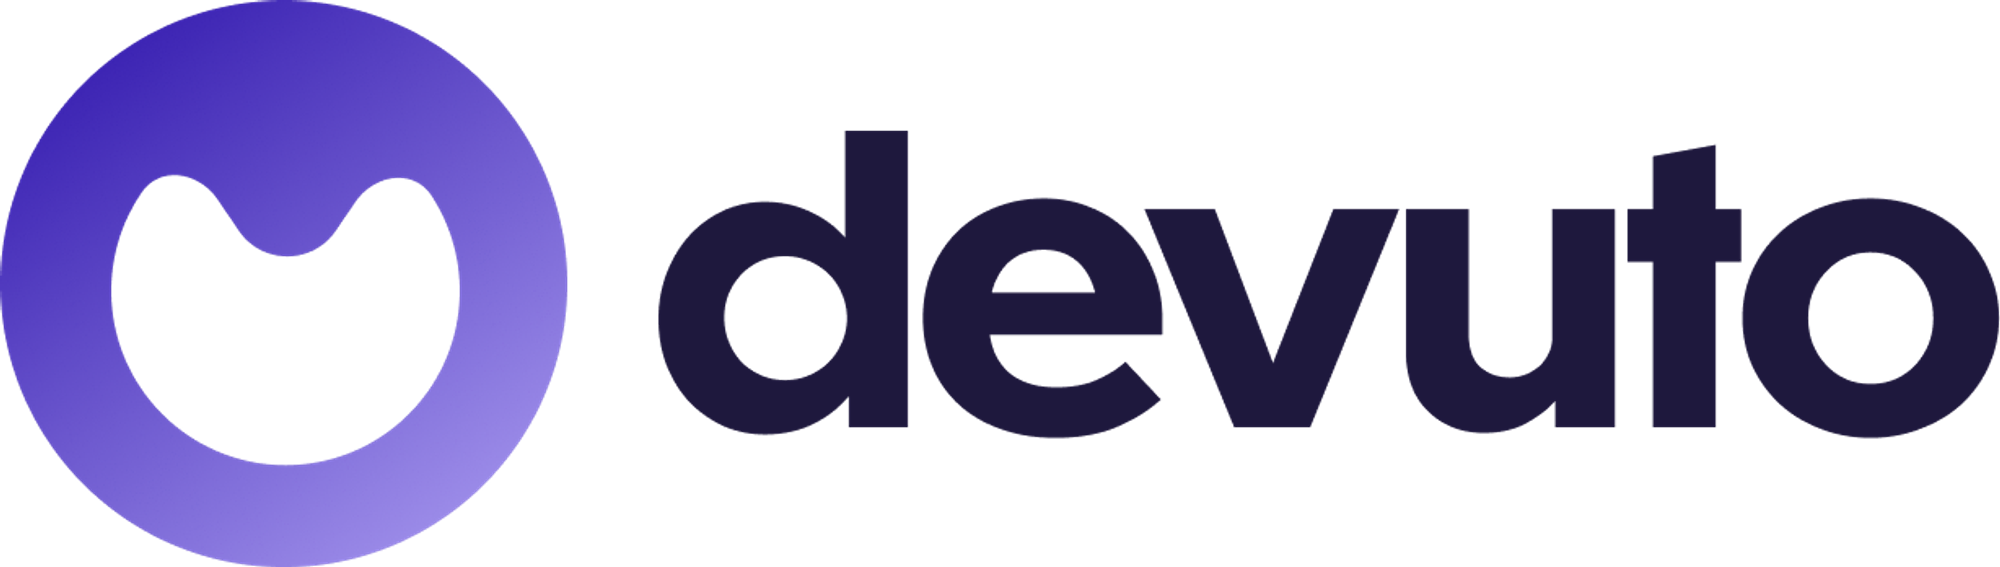 Modern logo design for devuto.com